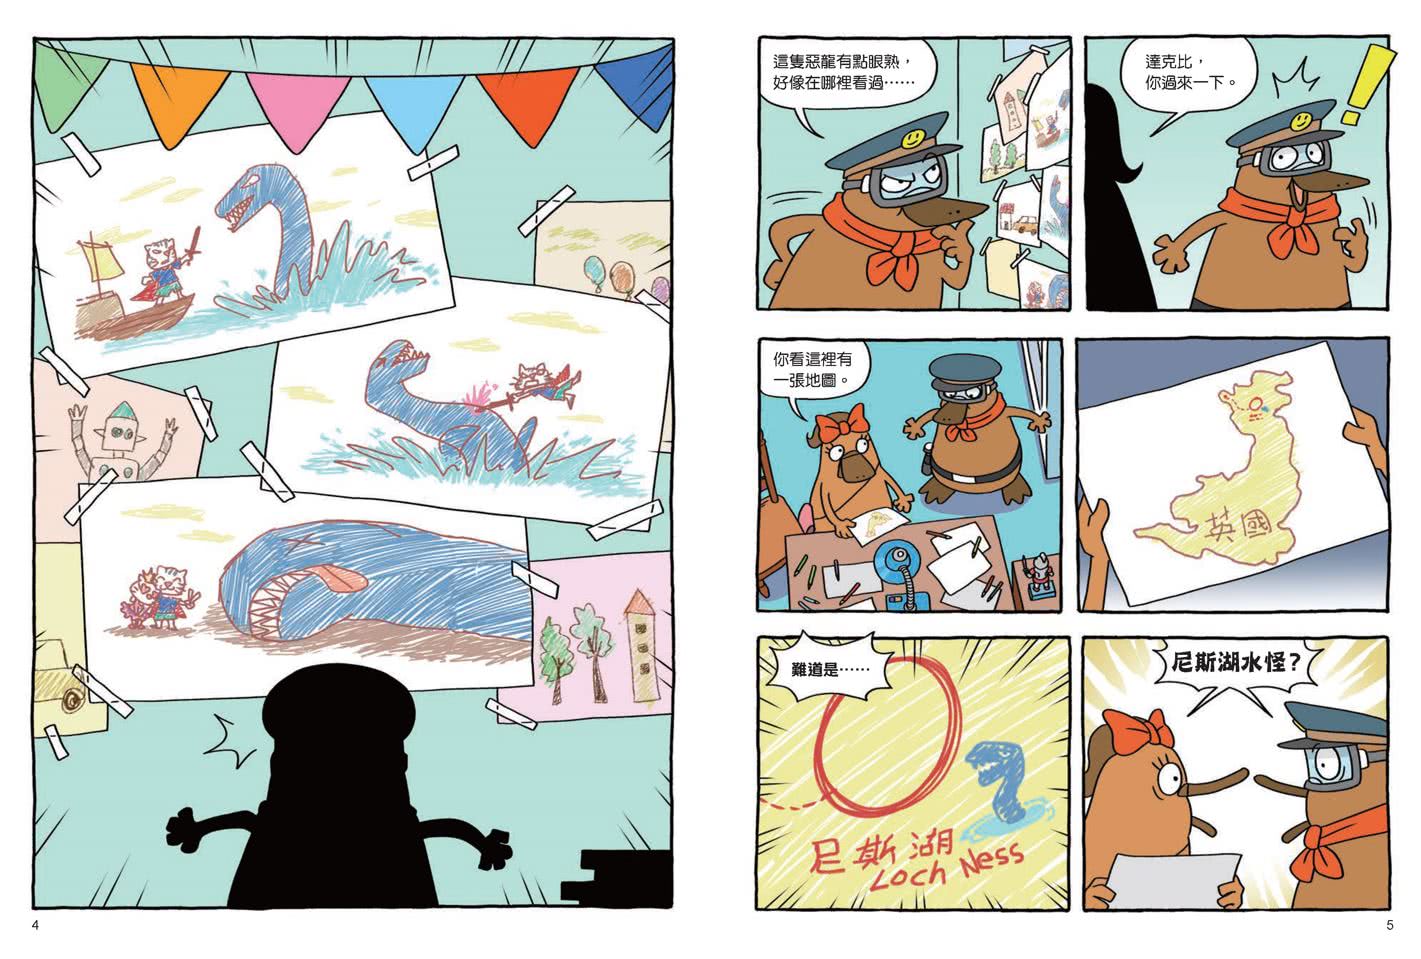 達克比與世界未解之謎1：水怪貓騎士：尼斯湖水怪的疑案調查